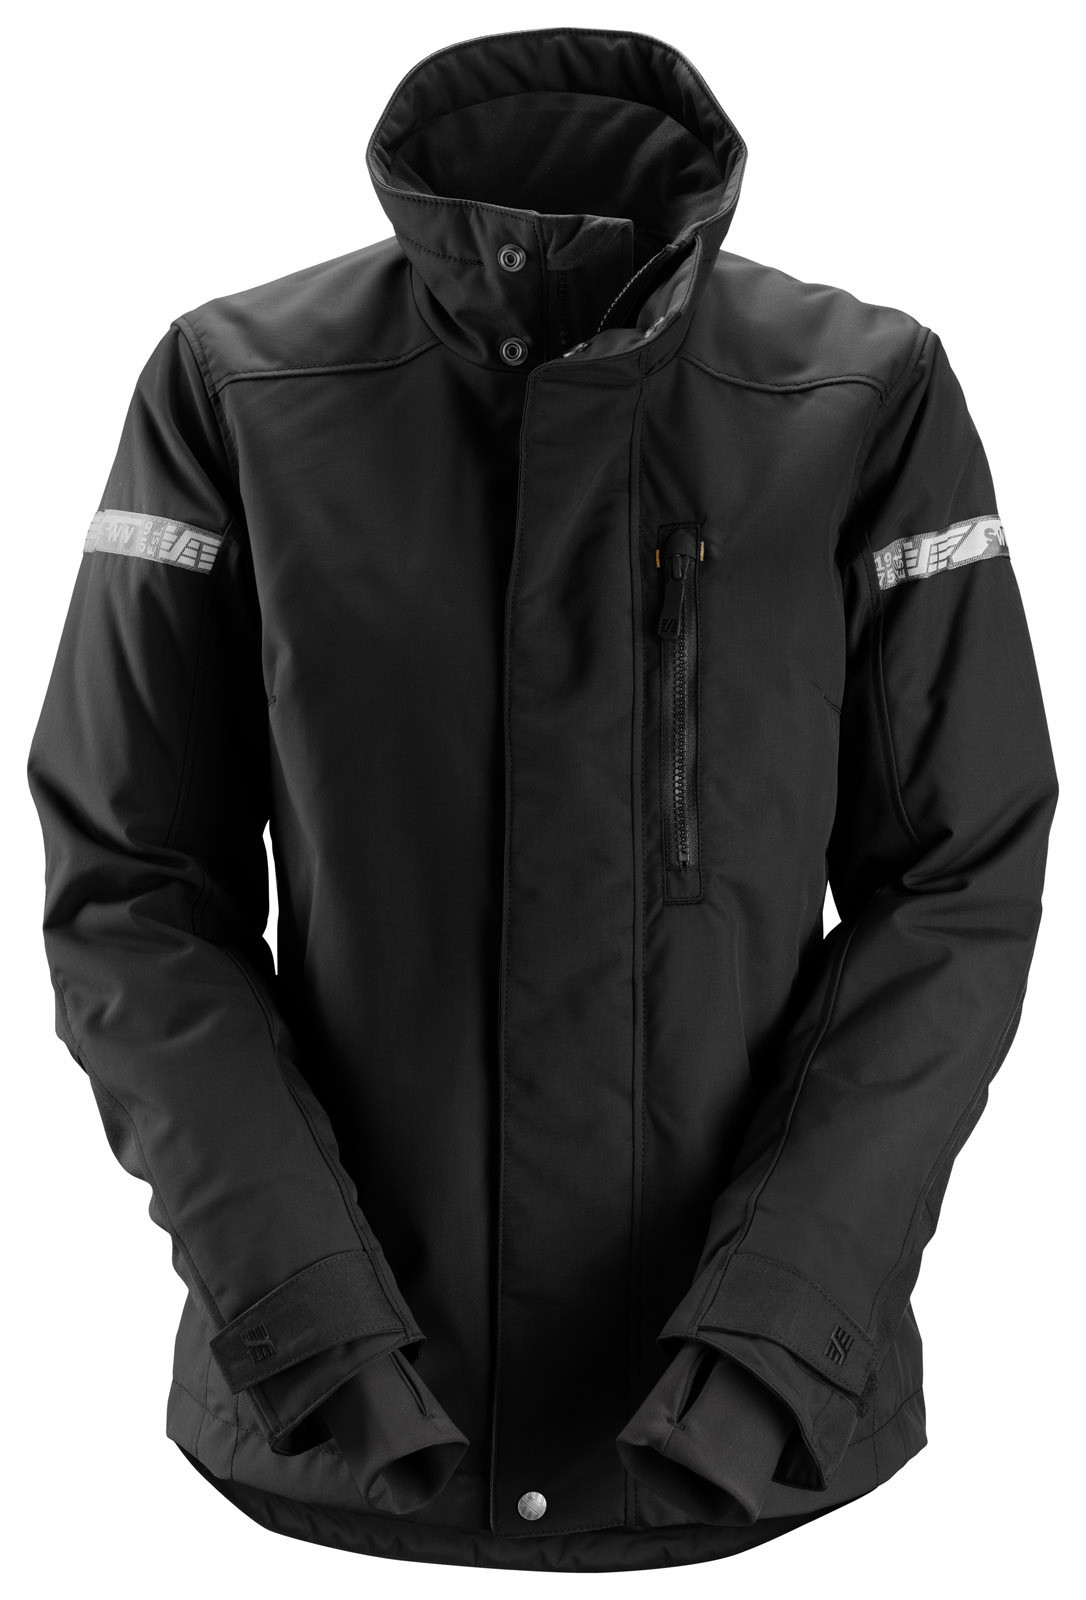 Dámska zimná bunda Snickers® AllroundWork 37.5® - veľkosť: XXL, farba: čierna